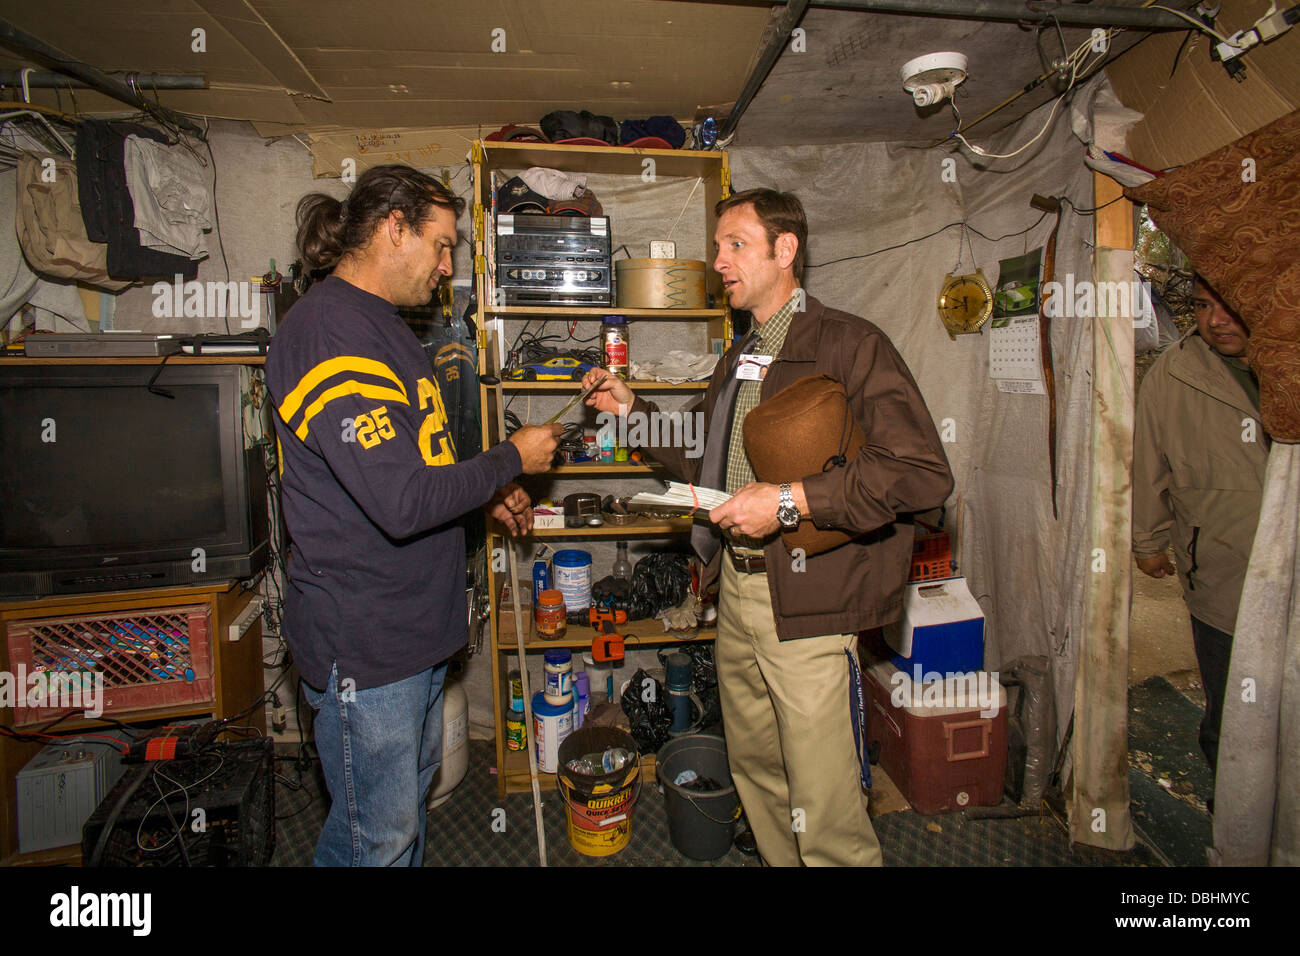 Un ministre local, visite un vétéran militaire indigents dans un abri de fortune chez les résidents sans-abri Banque D'Images